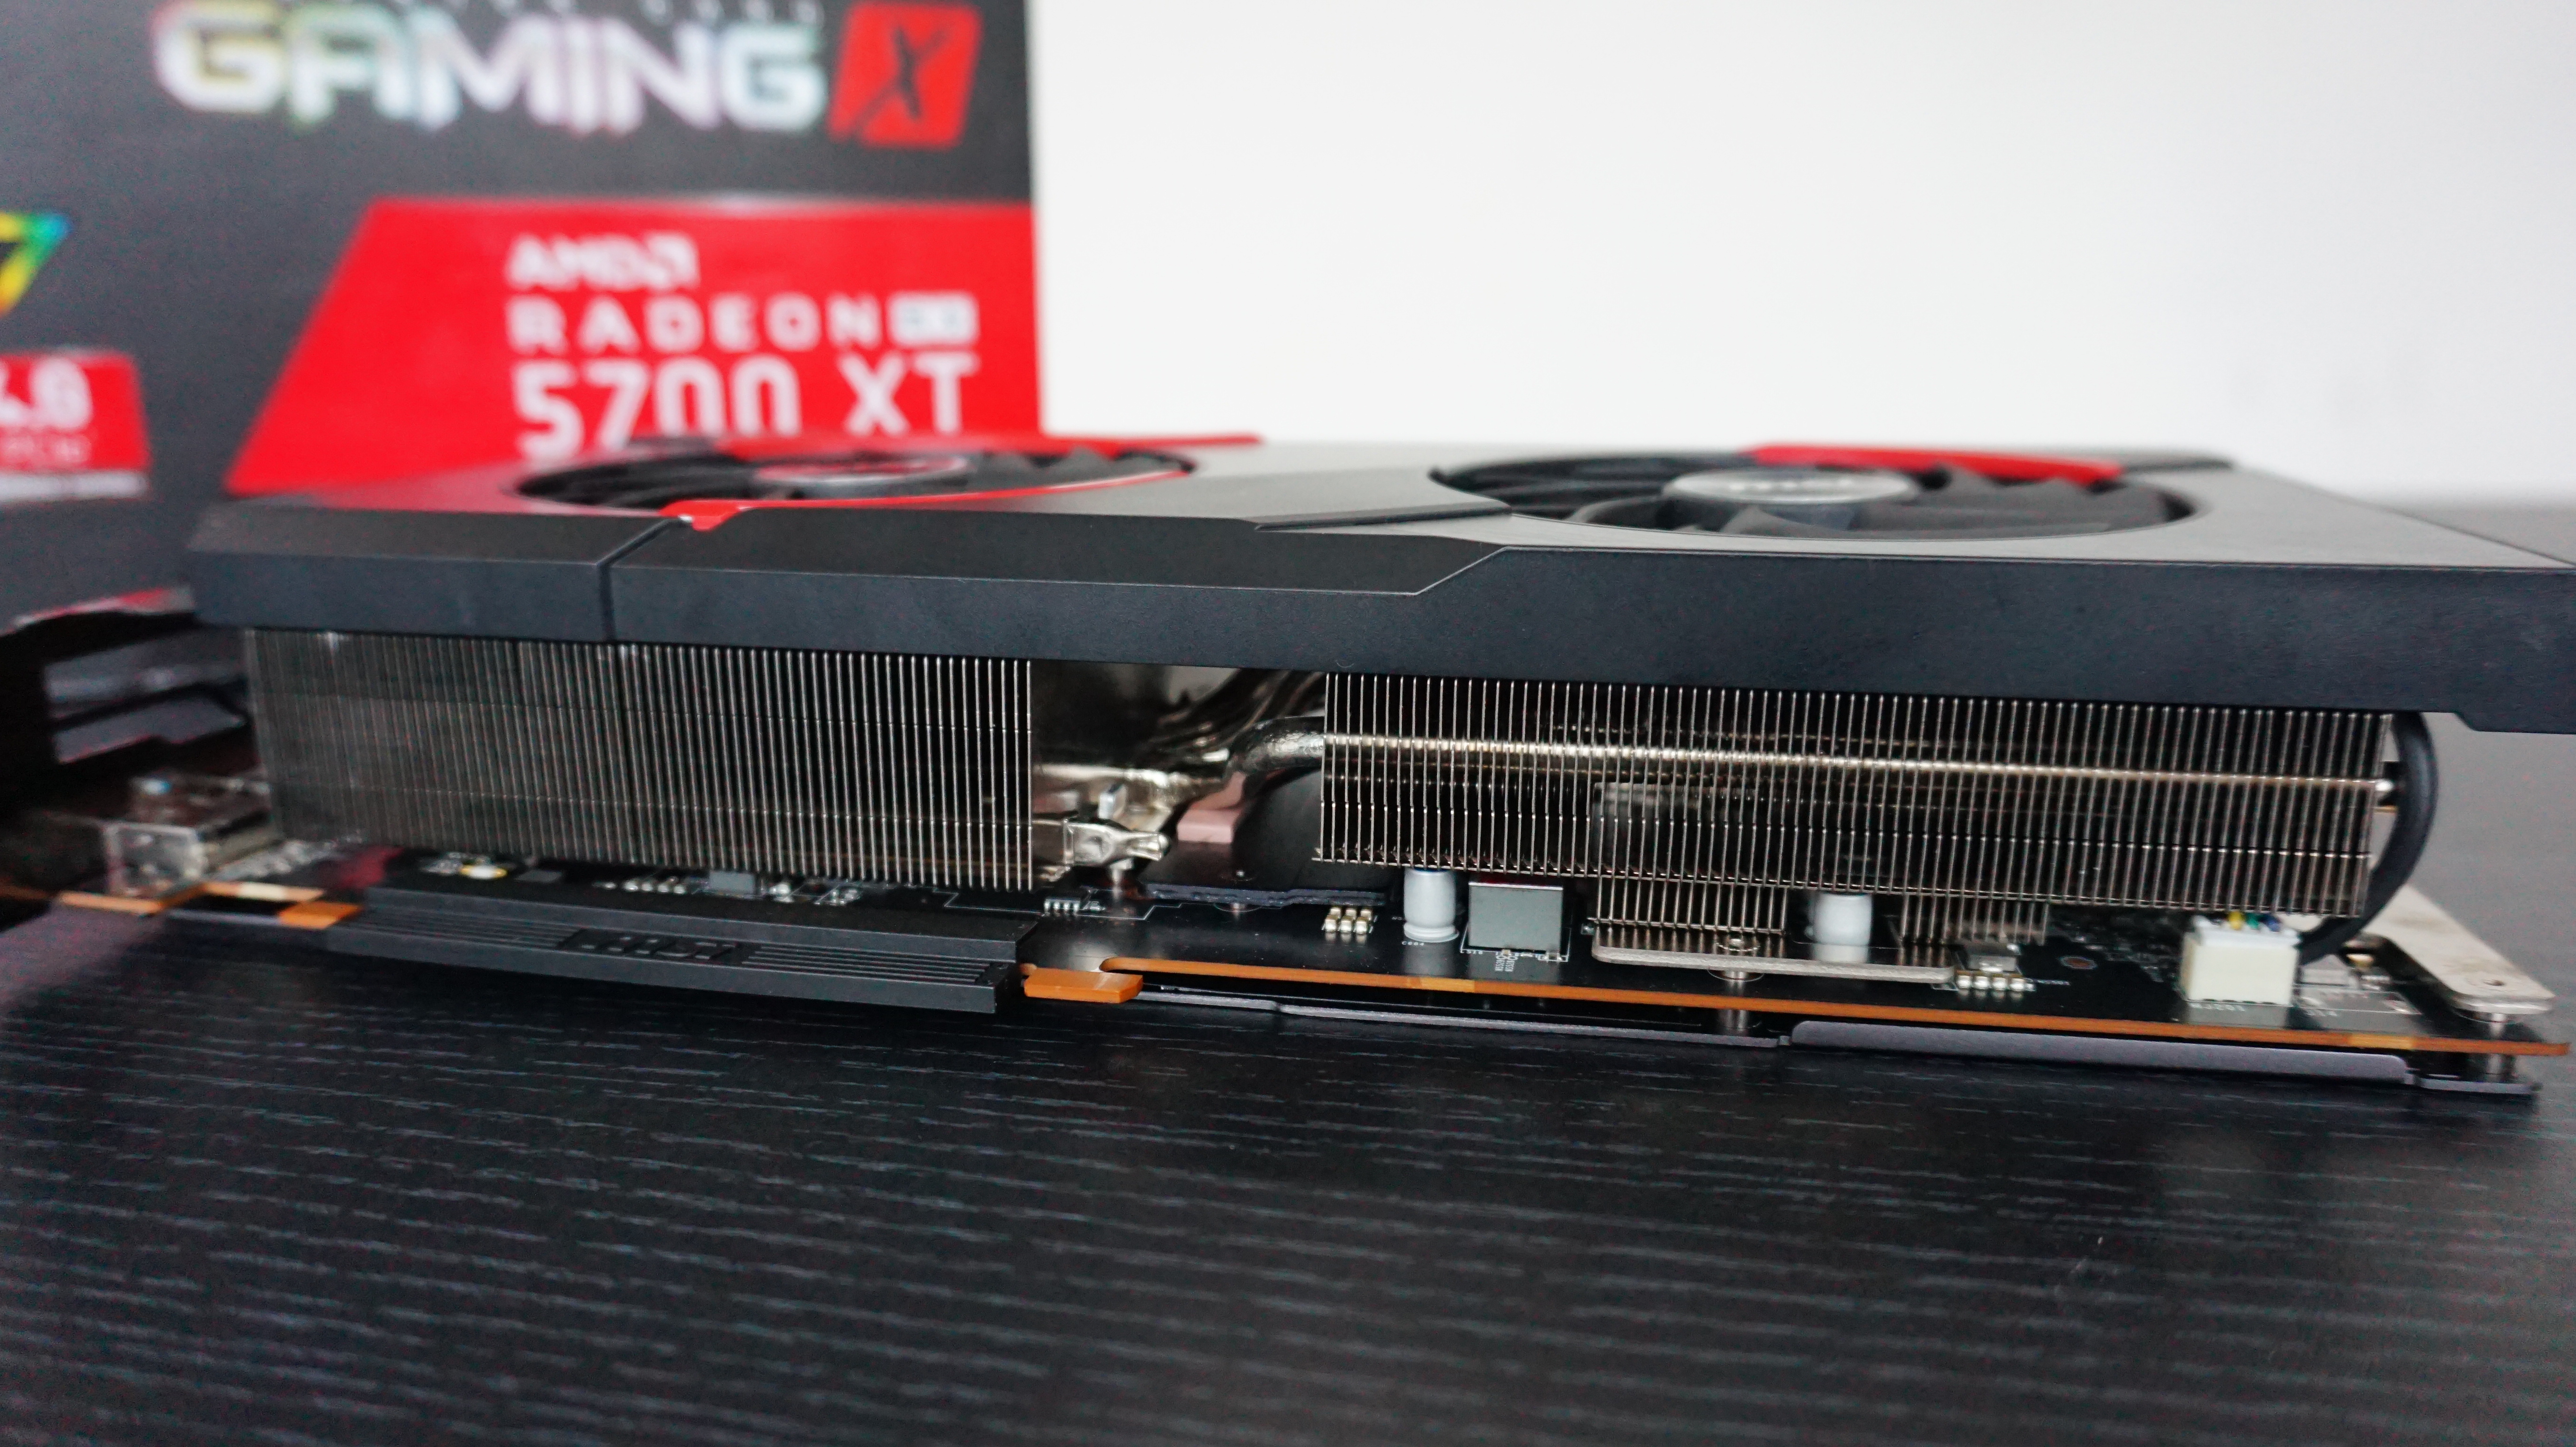 MSI AMD Radeon RX 5700 XT: Hiệu năng đầy kinh ngạc với mức giá hấp dẫn vô cùng - Ảnh 10.